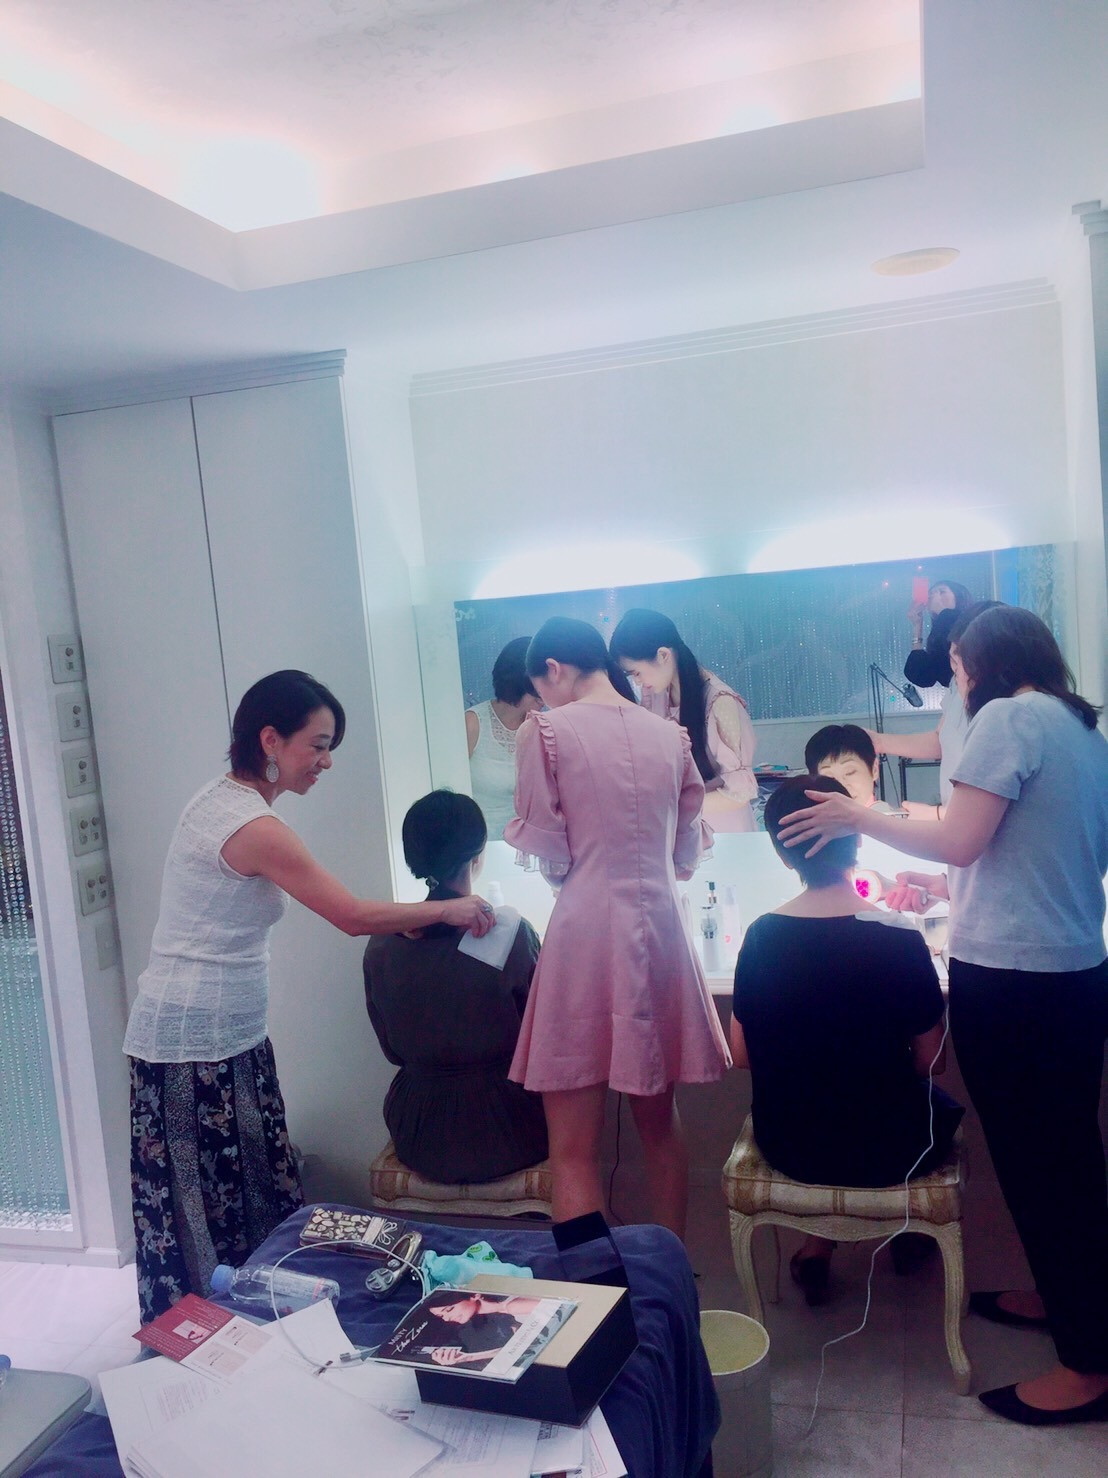 東京の美容部員育成スクールは前向きなマインド教育も実践